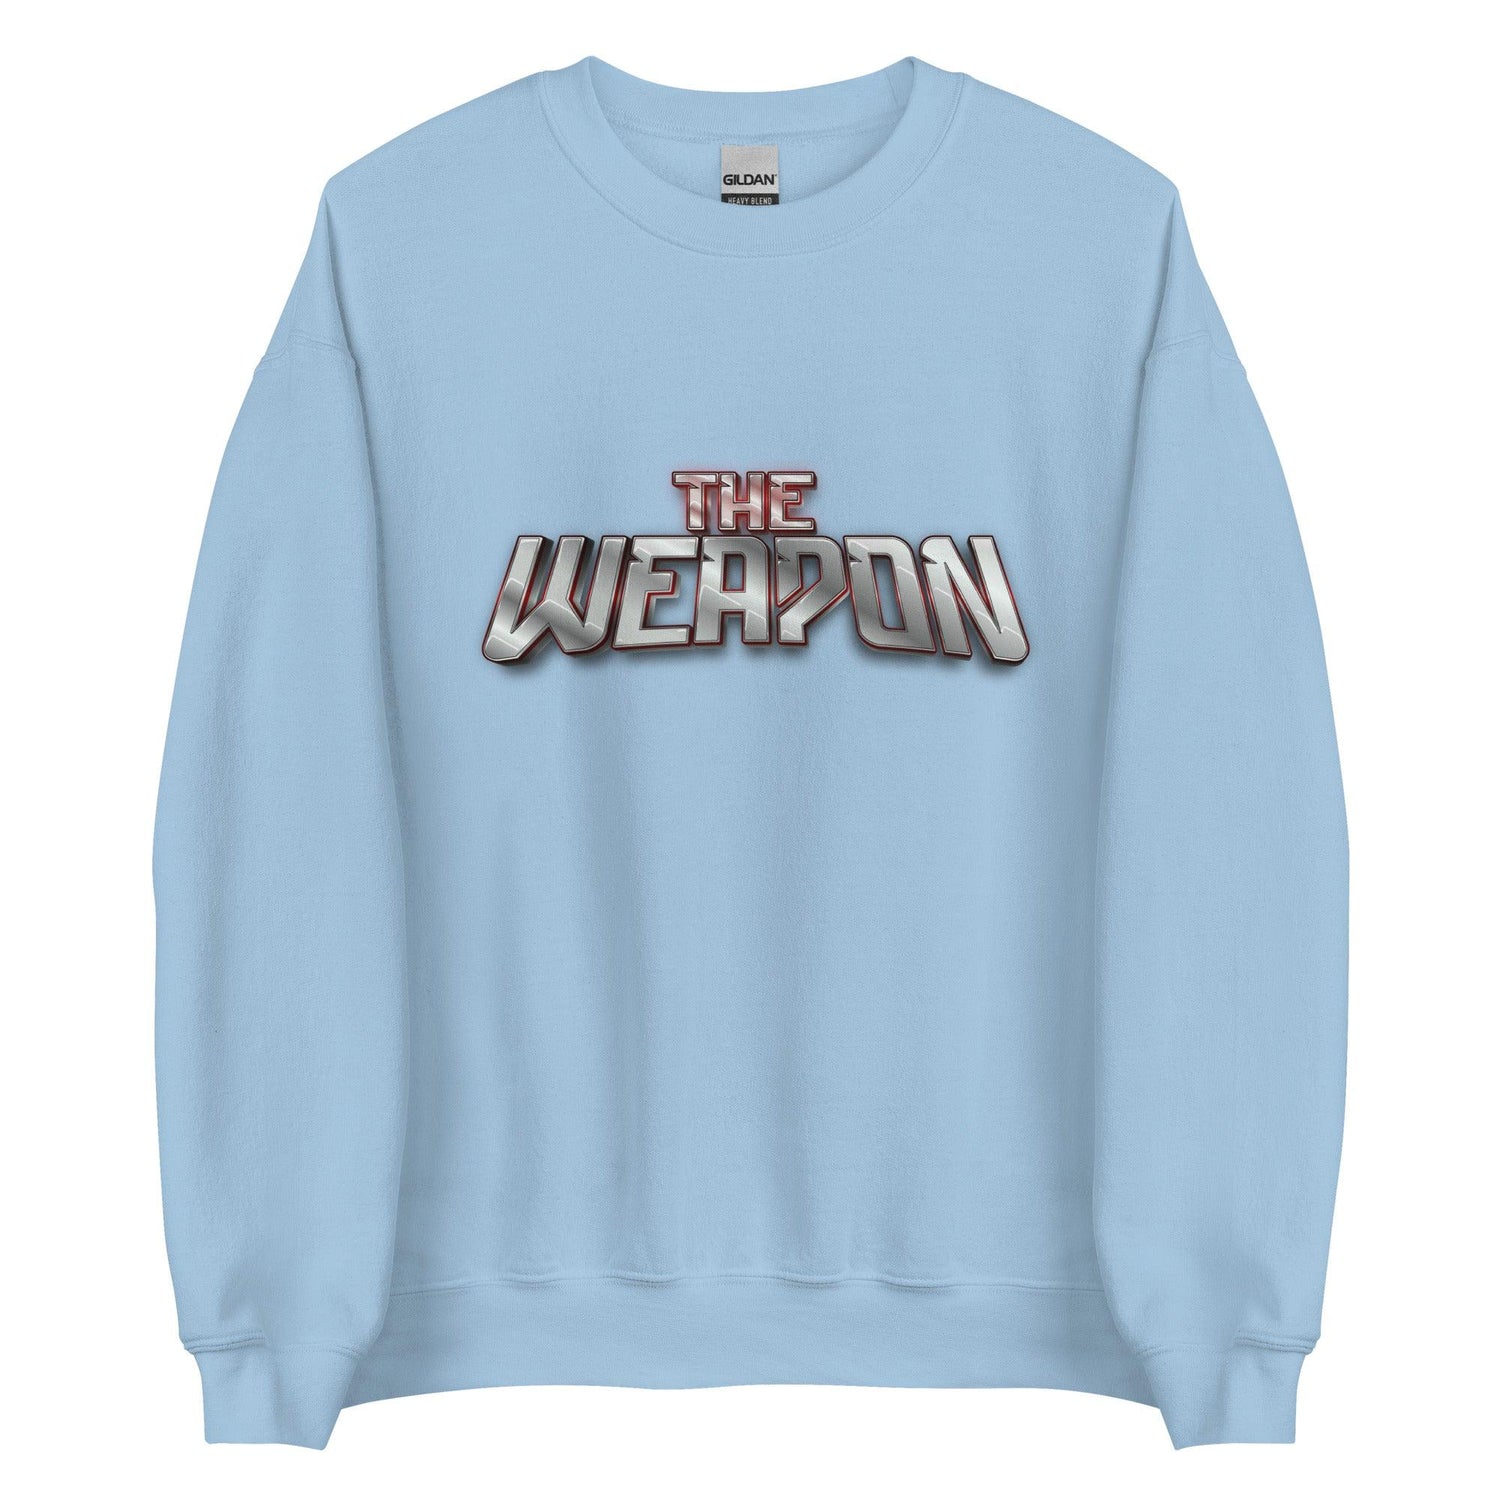 Aubrey Ward Jr. "The Weapon" Sweatshirt - Fan Arch